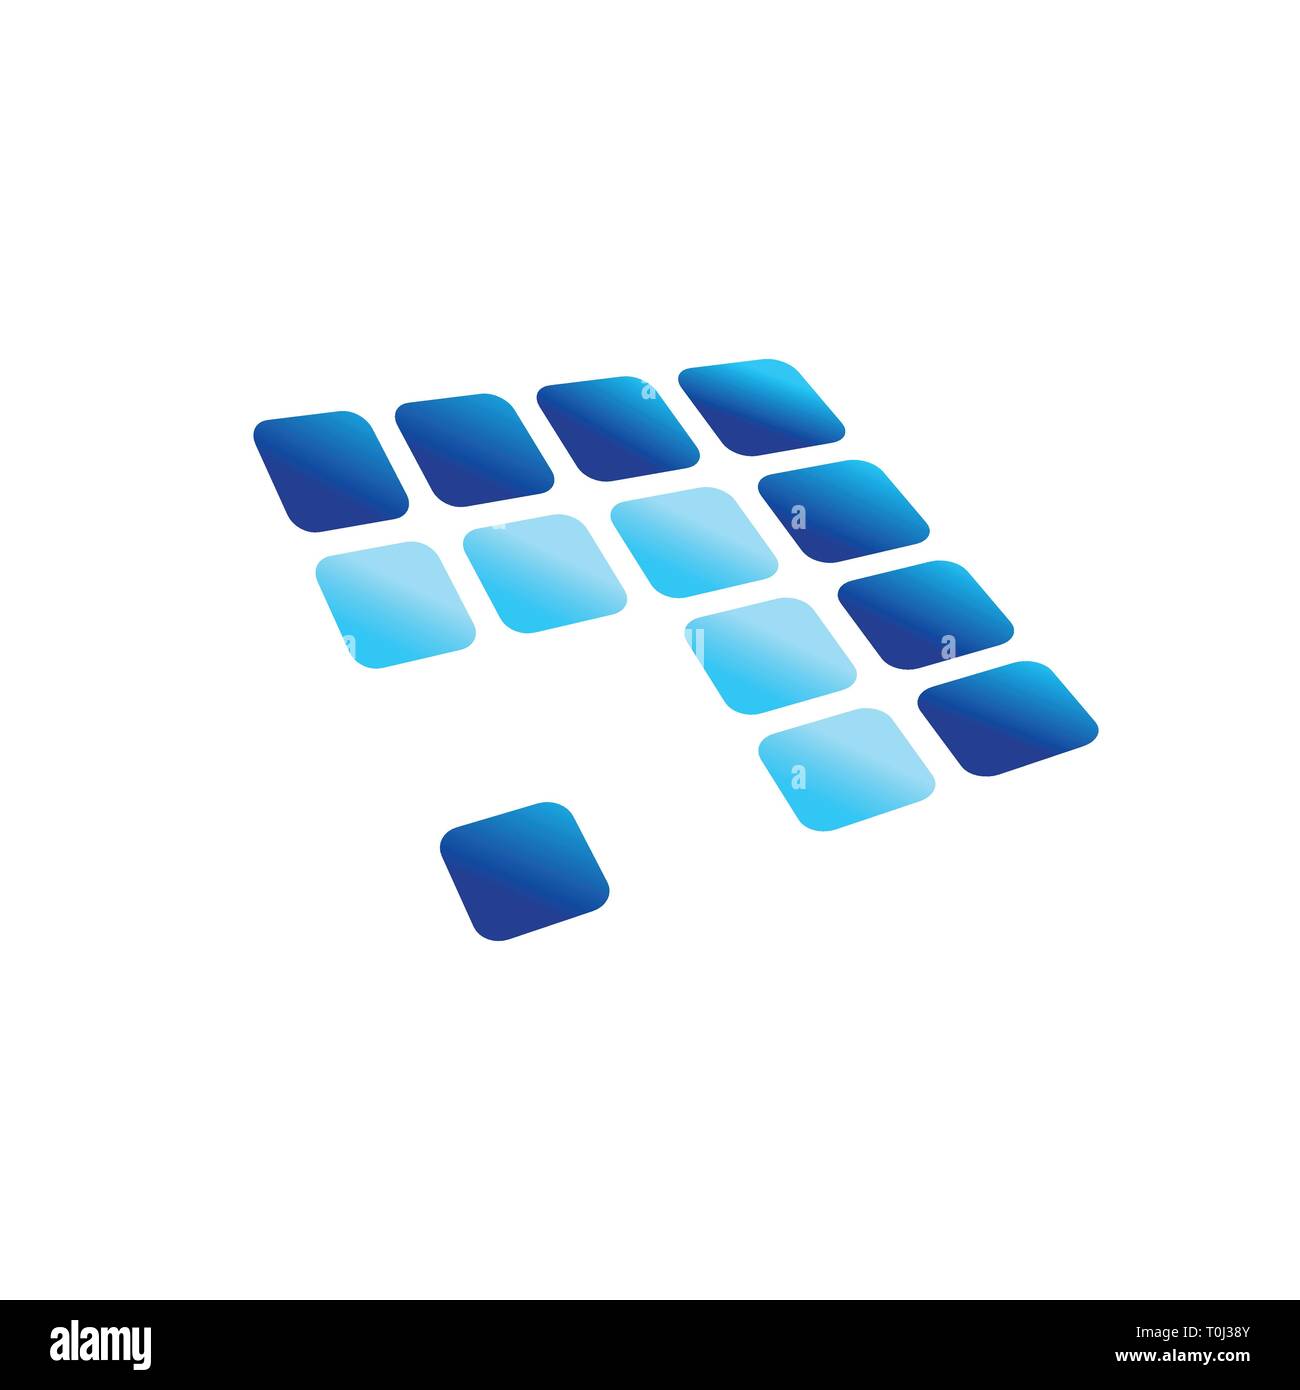 Flèche bleue panneau numérique blocs arrondis symbole vecteur modèle de conception de logo graphique Illustration de Vecteur